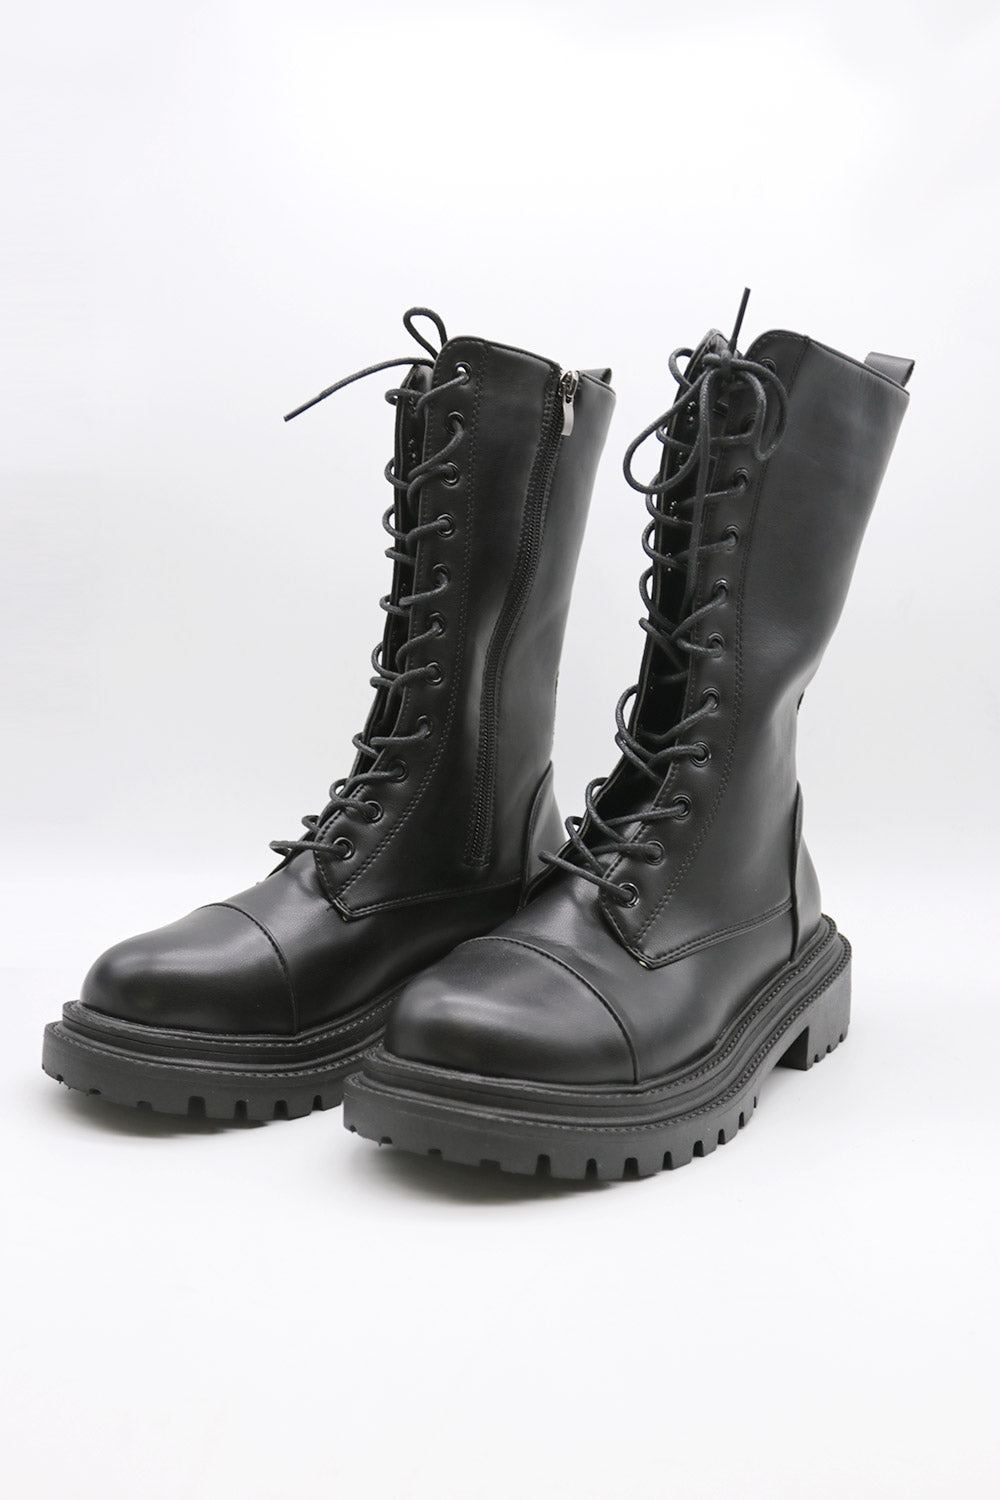 storets.com Eda Combat Boots